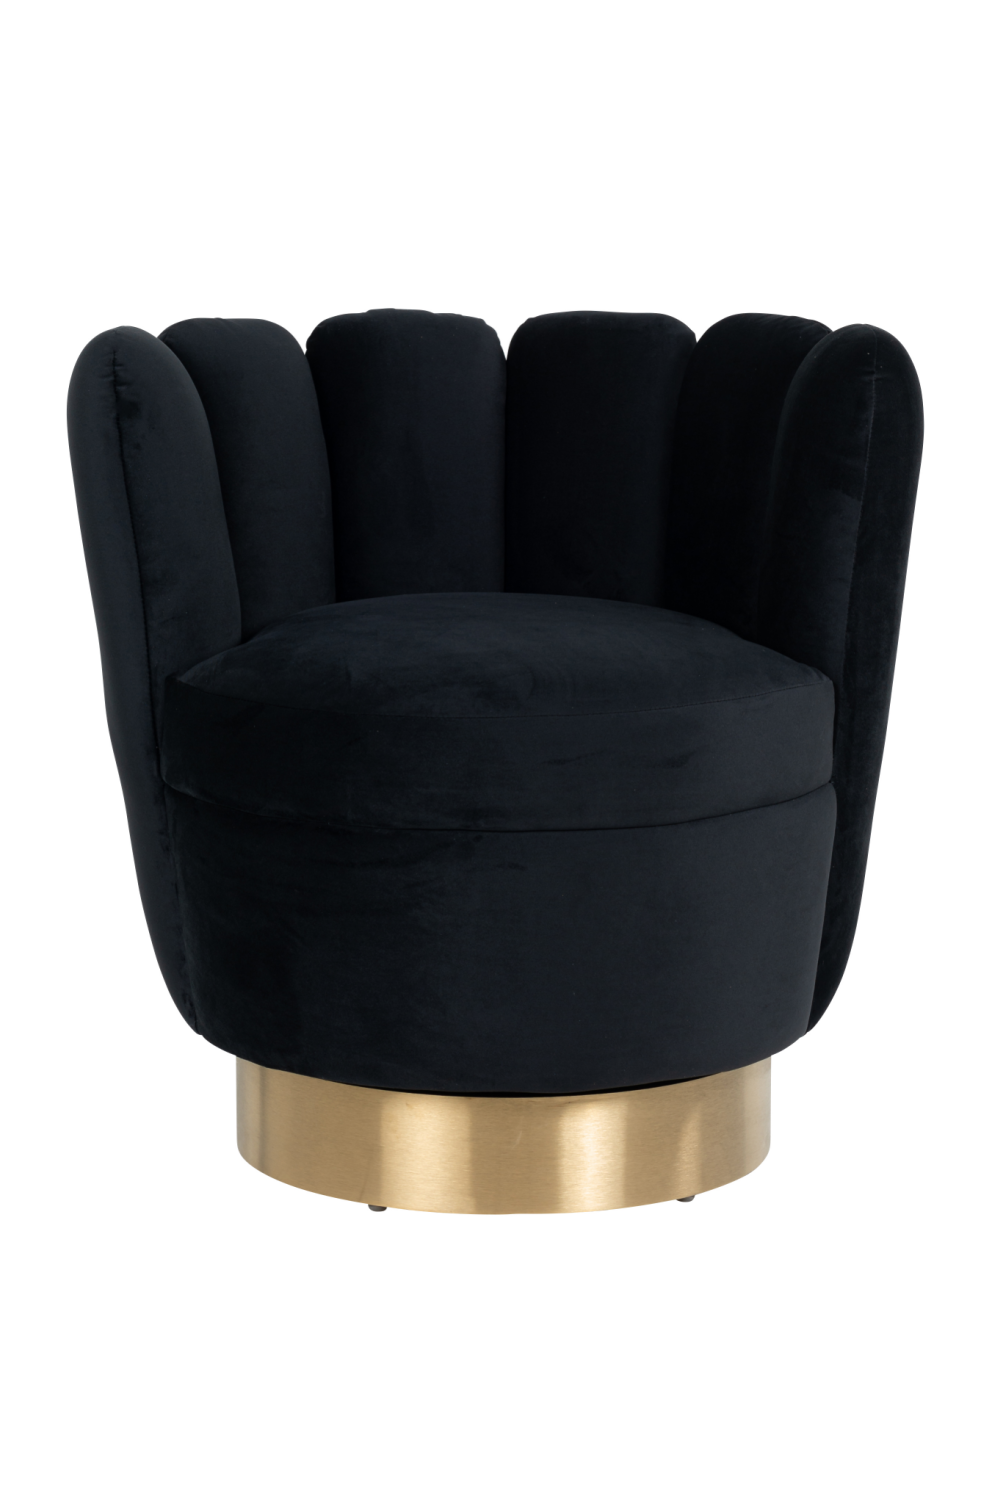 Round Black Velvet Easy Chair | OROA Mayfair | OROA